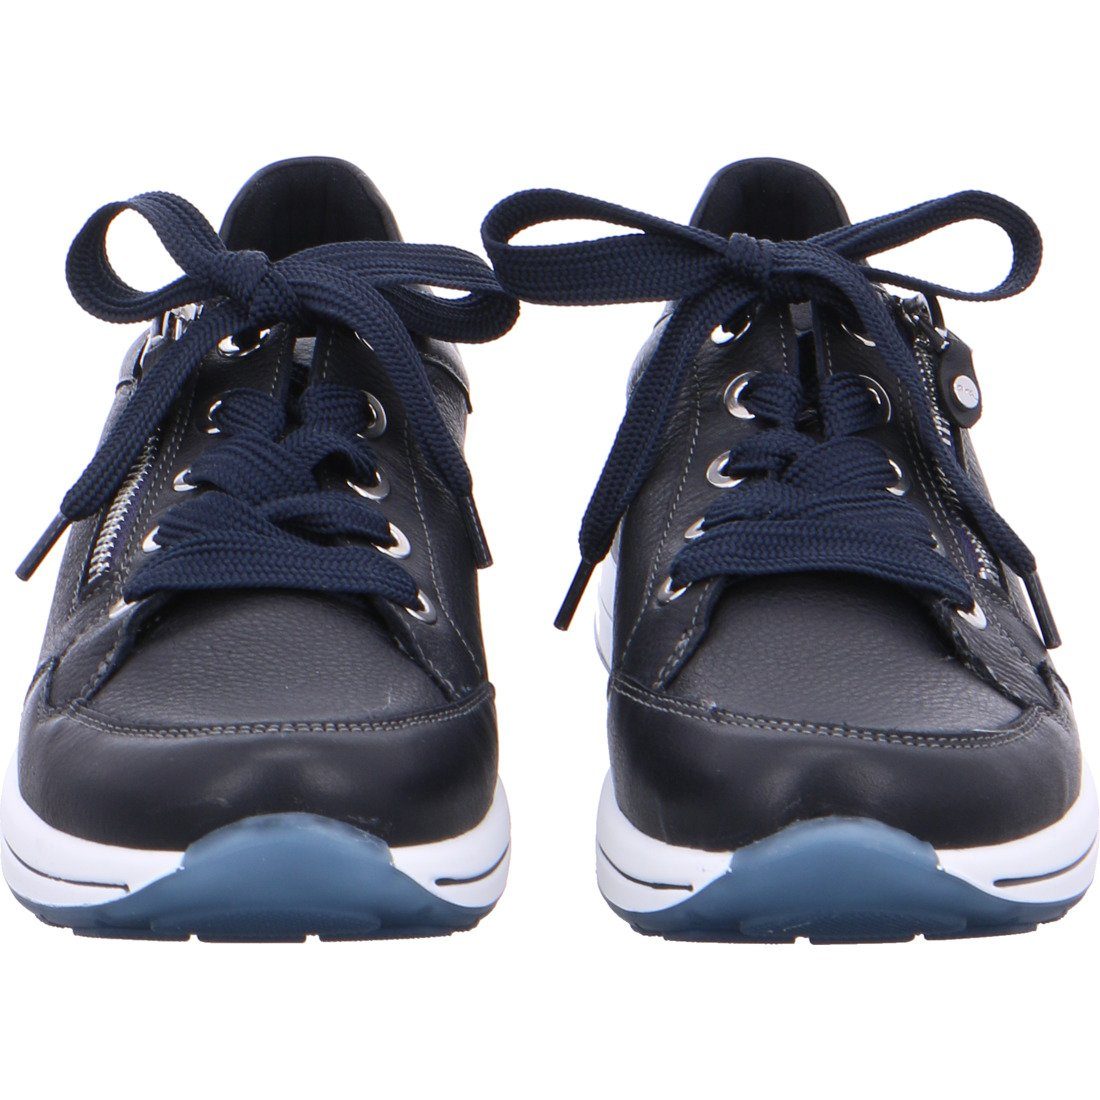 Sneaker Ara - Sneaker 043785 Ara beige Schuhe, Nara Damen Leder